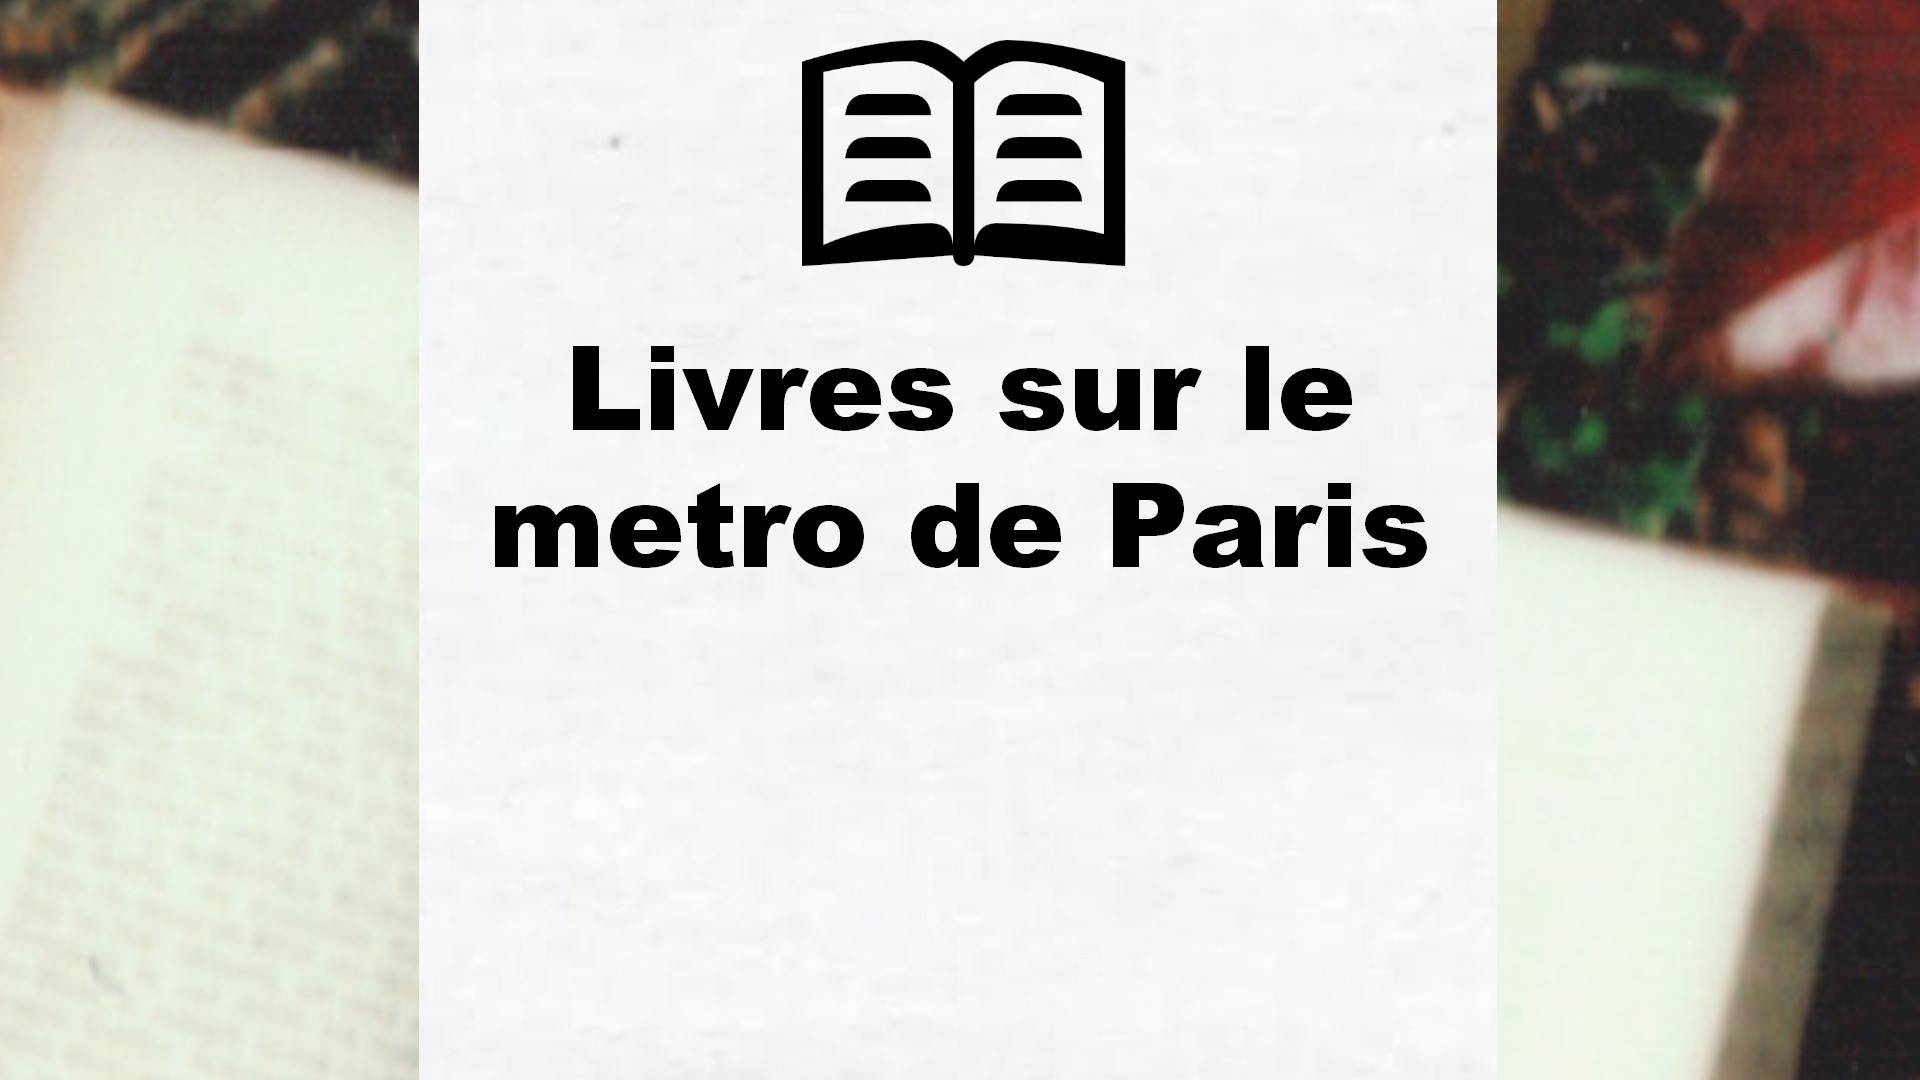 Livres sur le metro de Paris